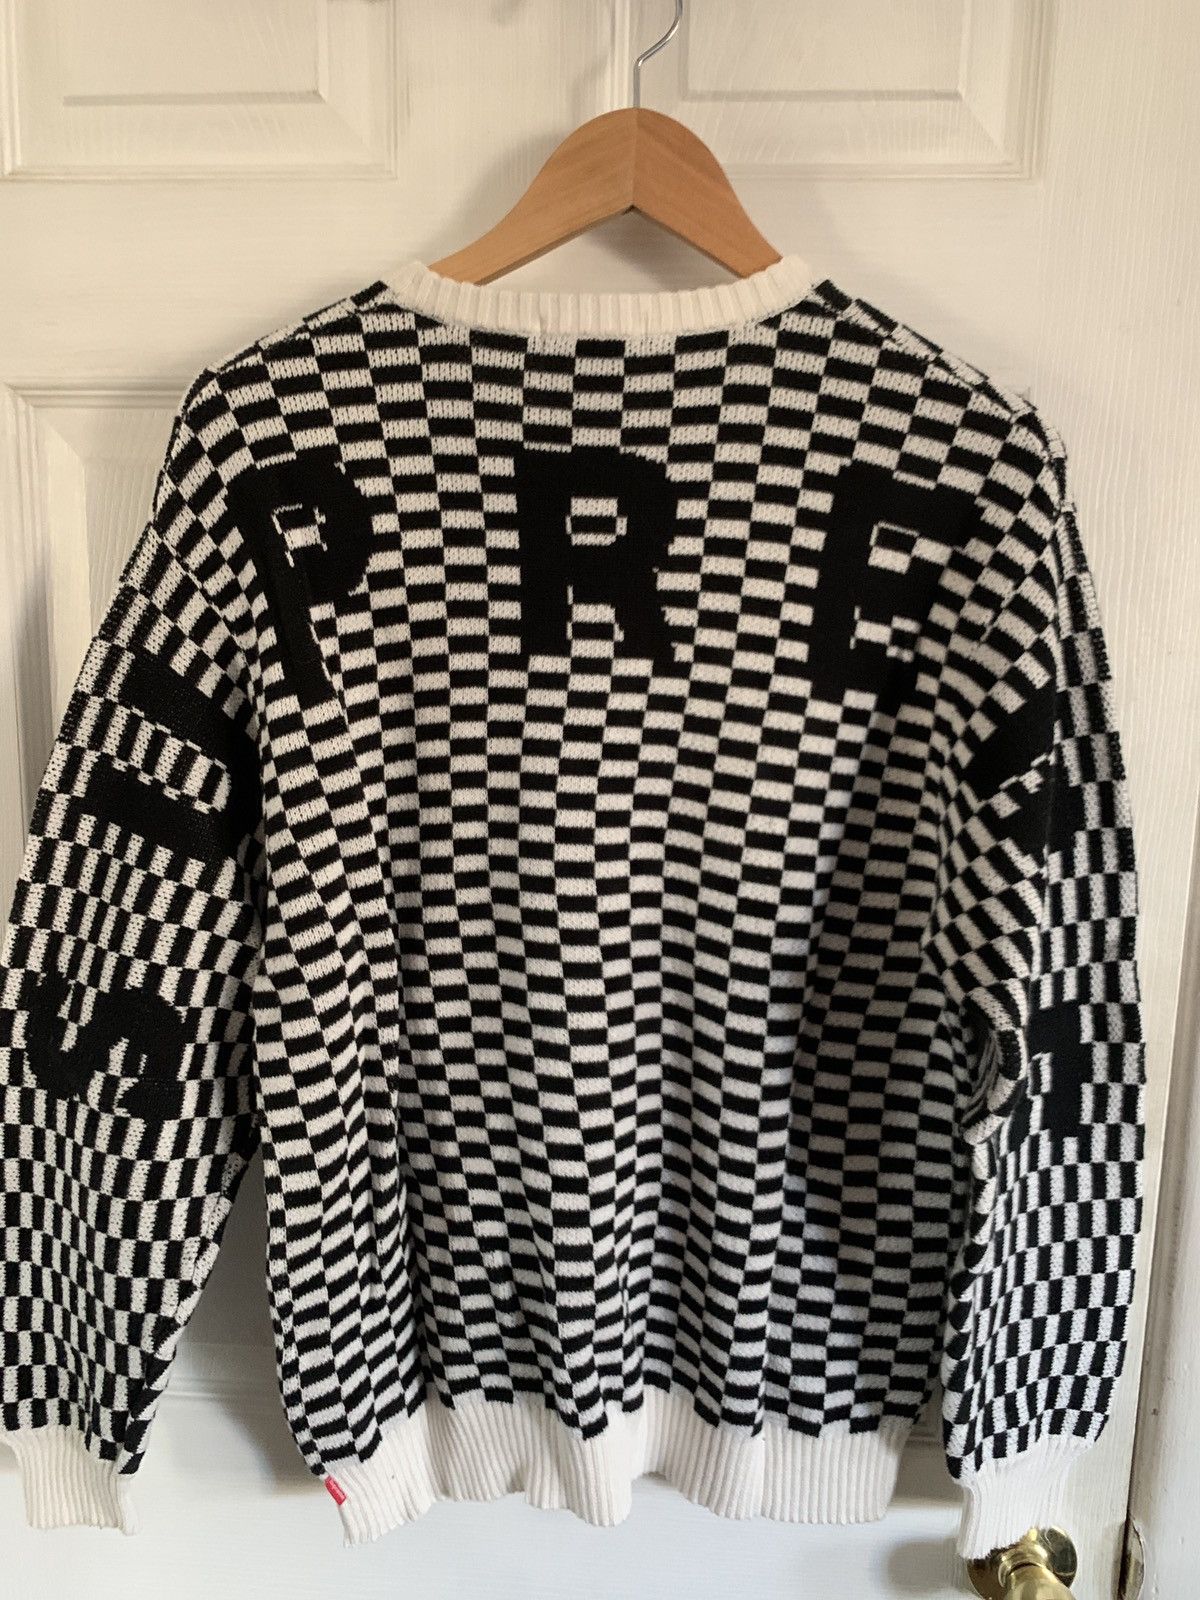 Supreme Supreme Back Logo Sweater Checkerboard | Grailed